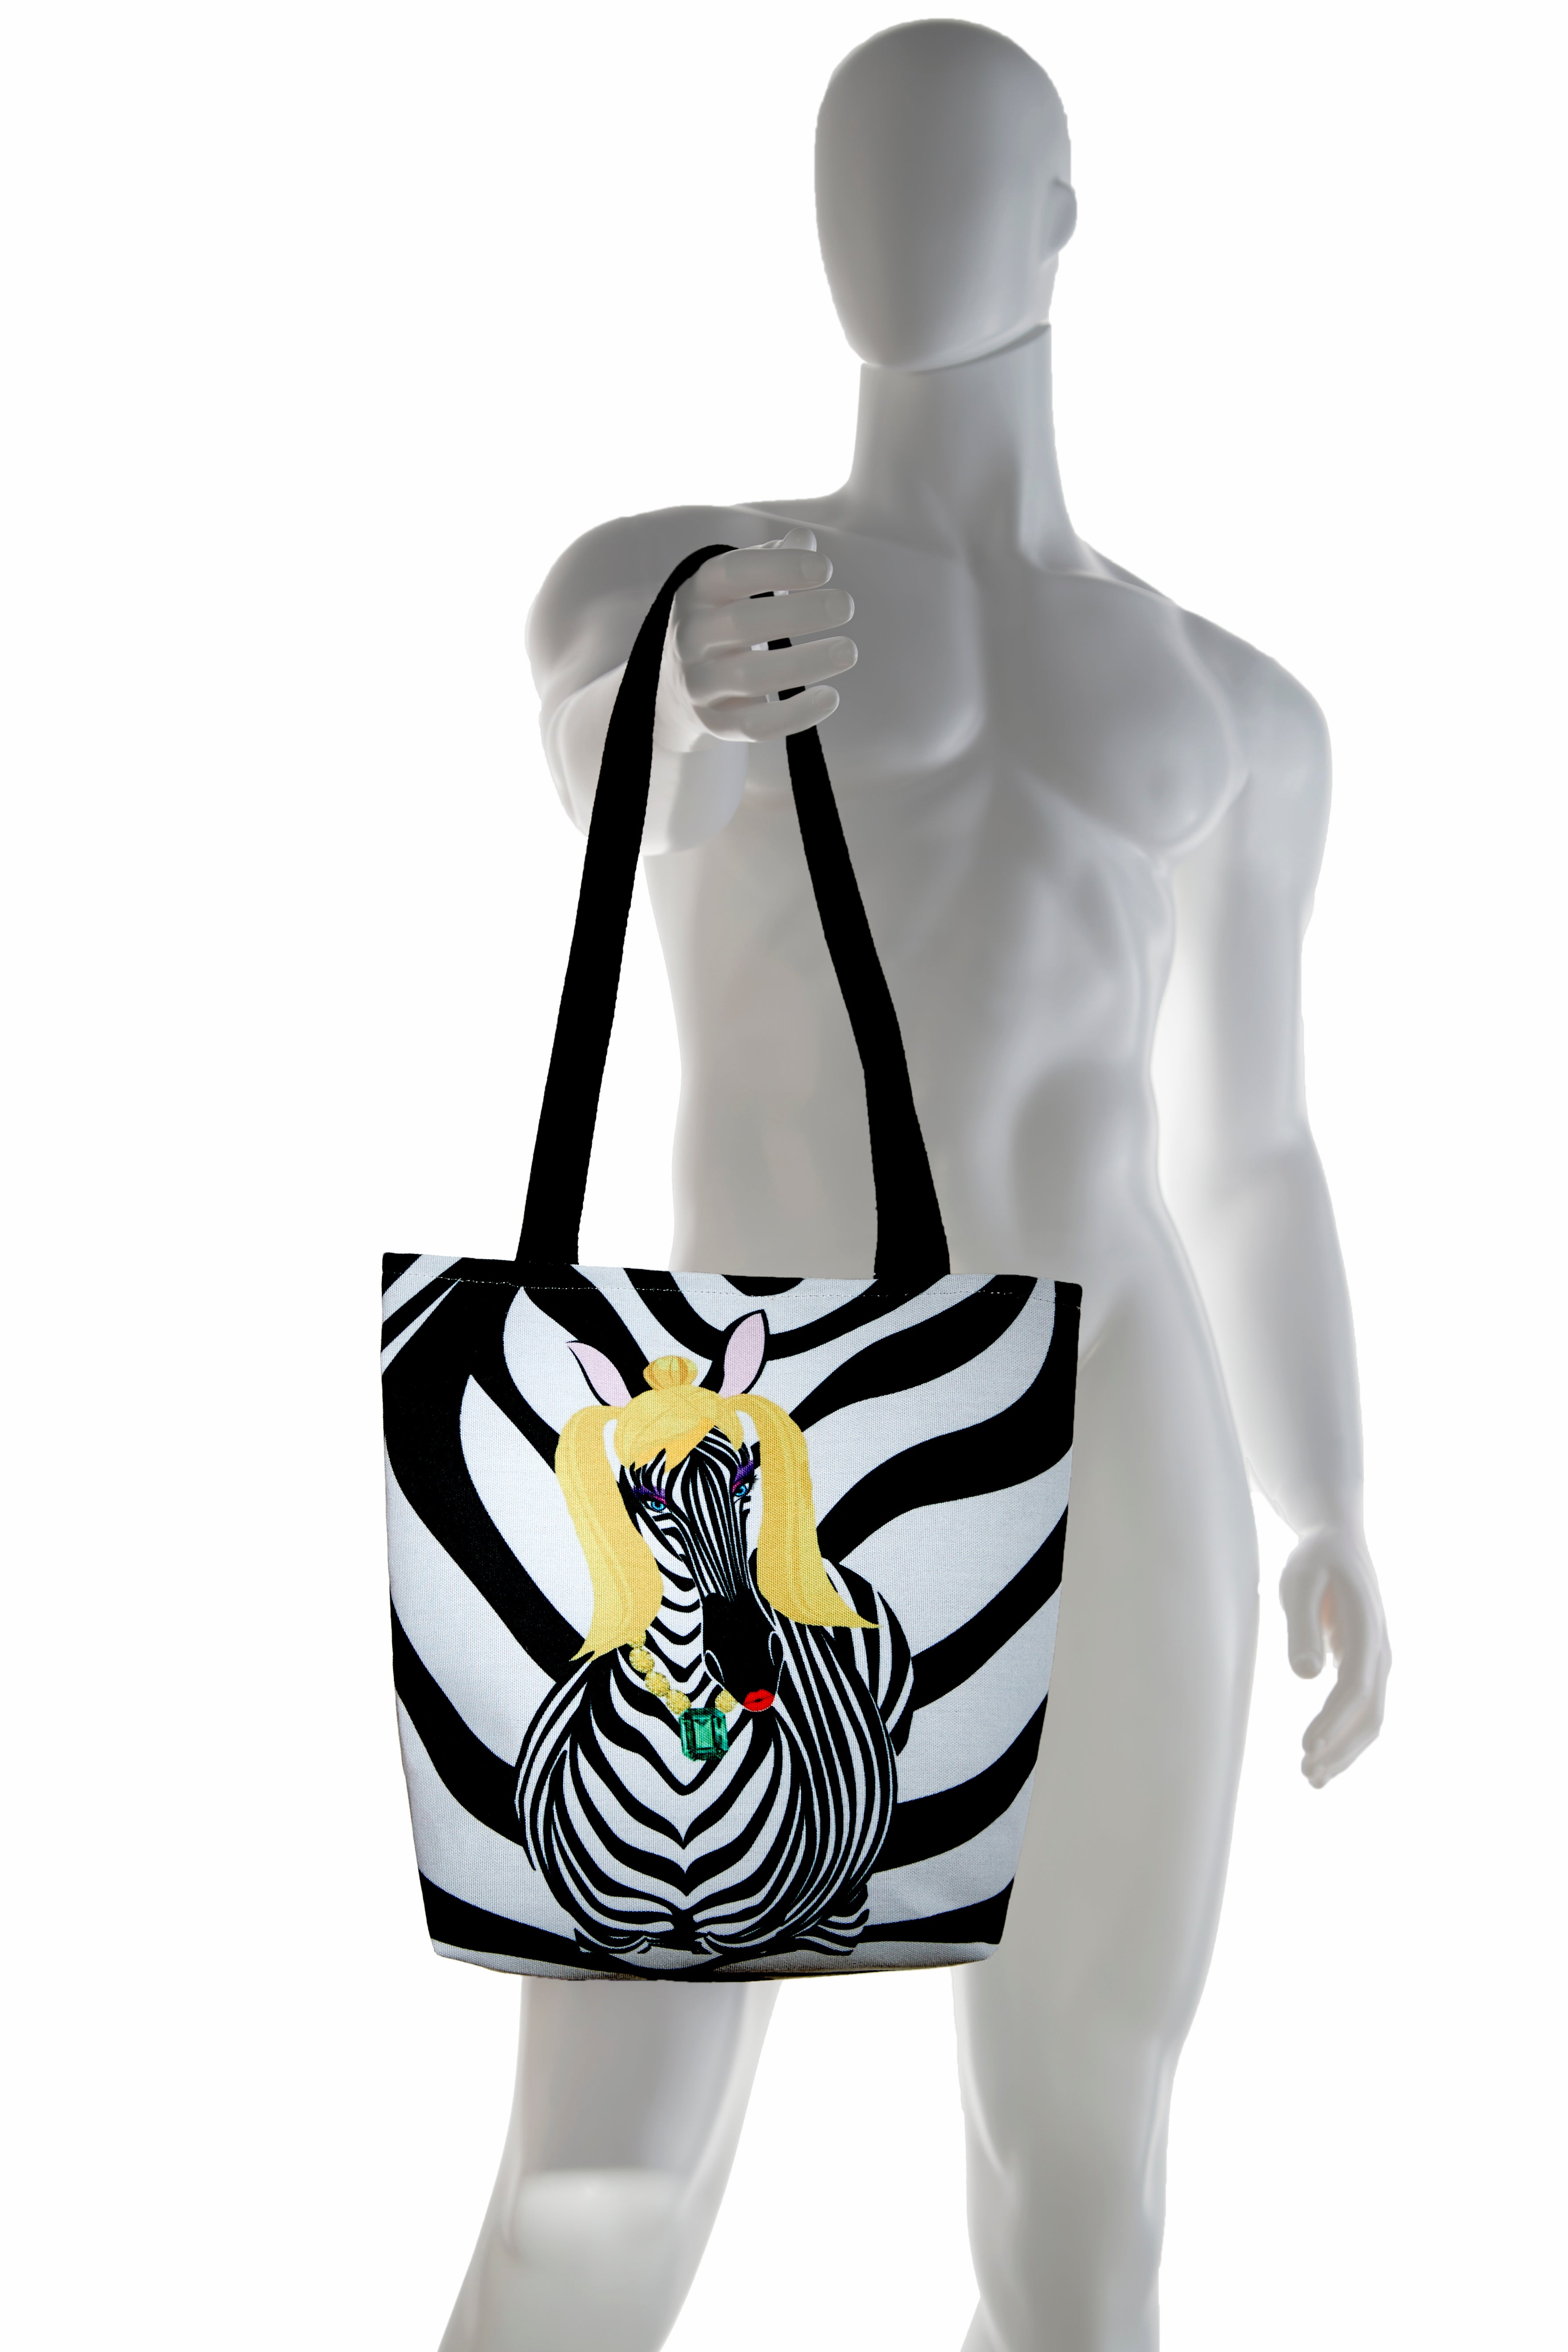 Zebra Girl Tote Bag